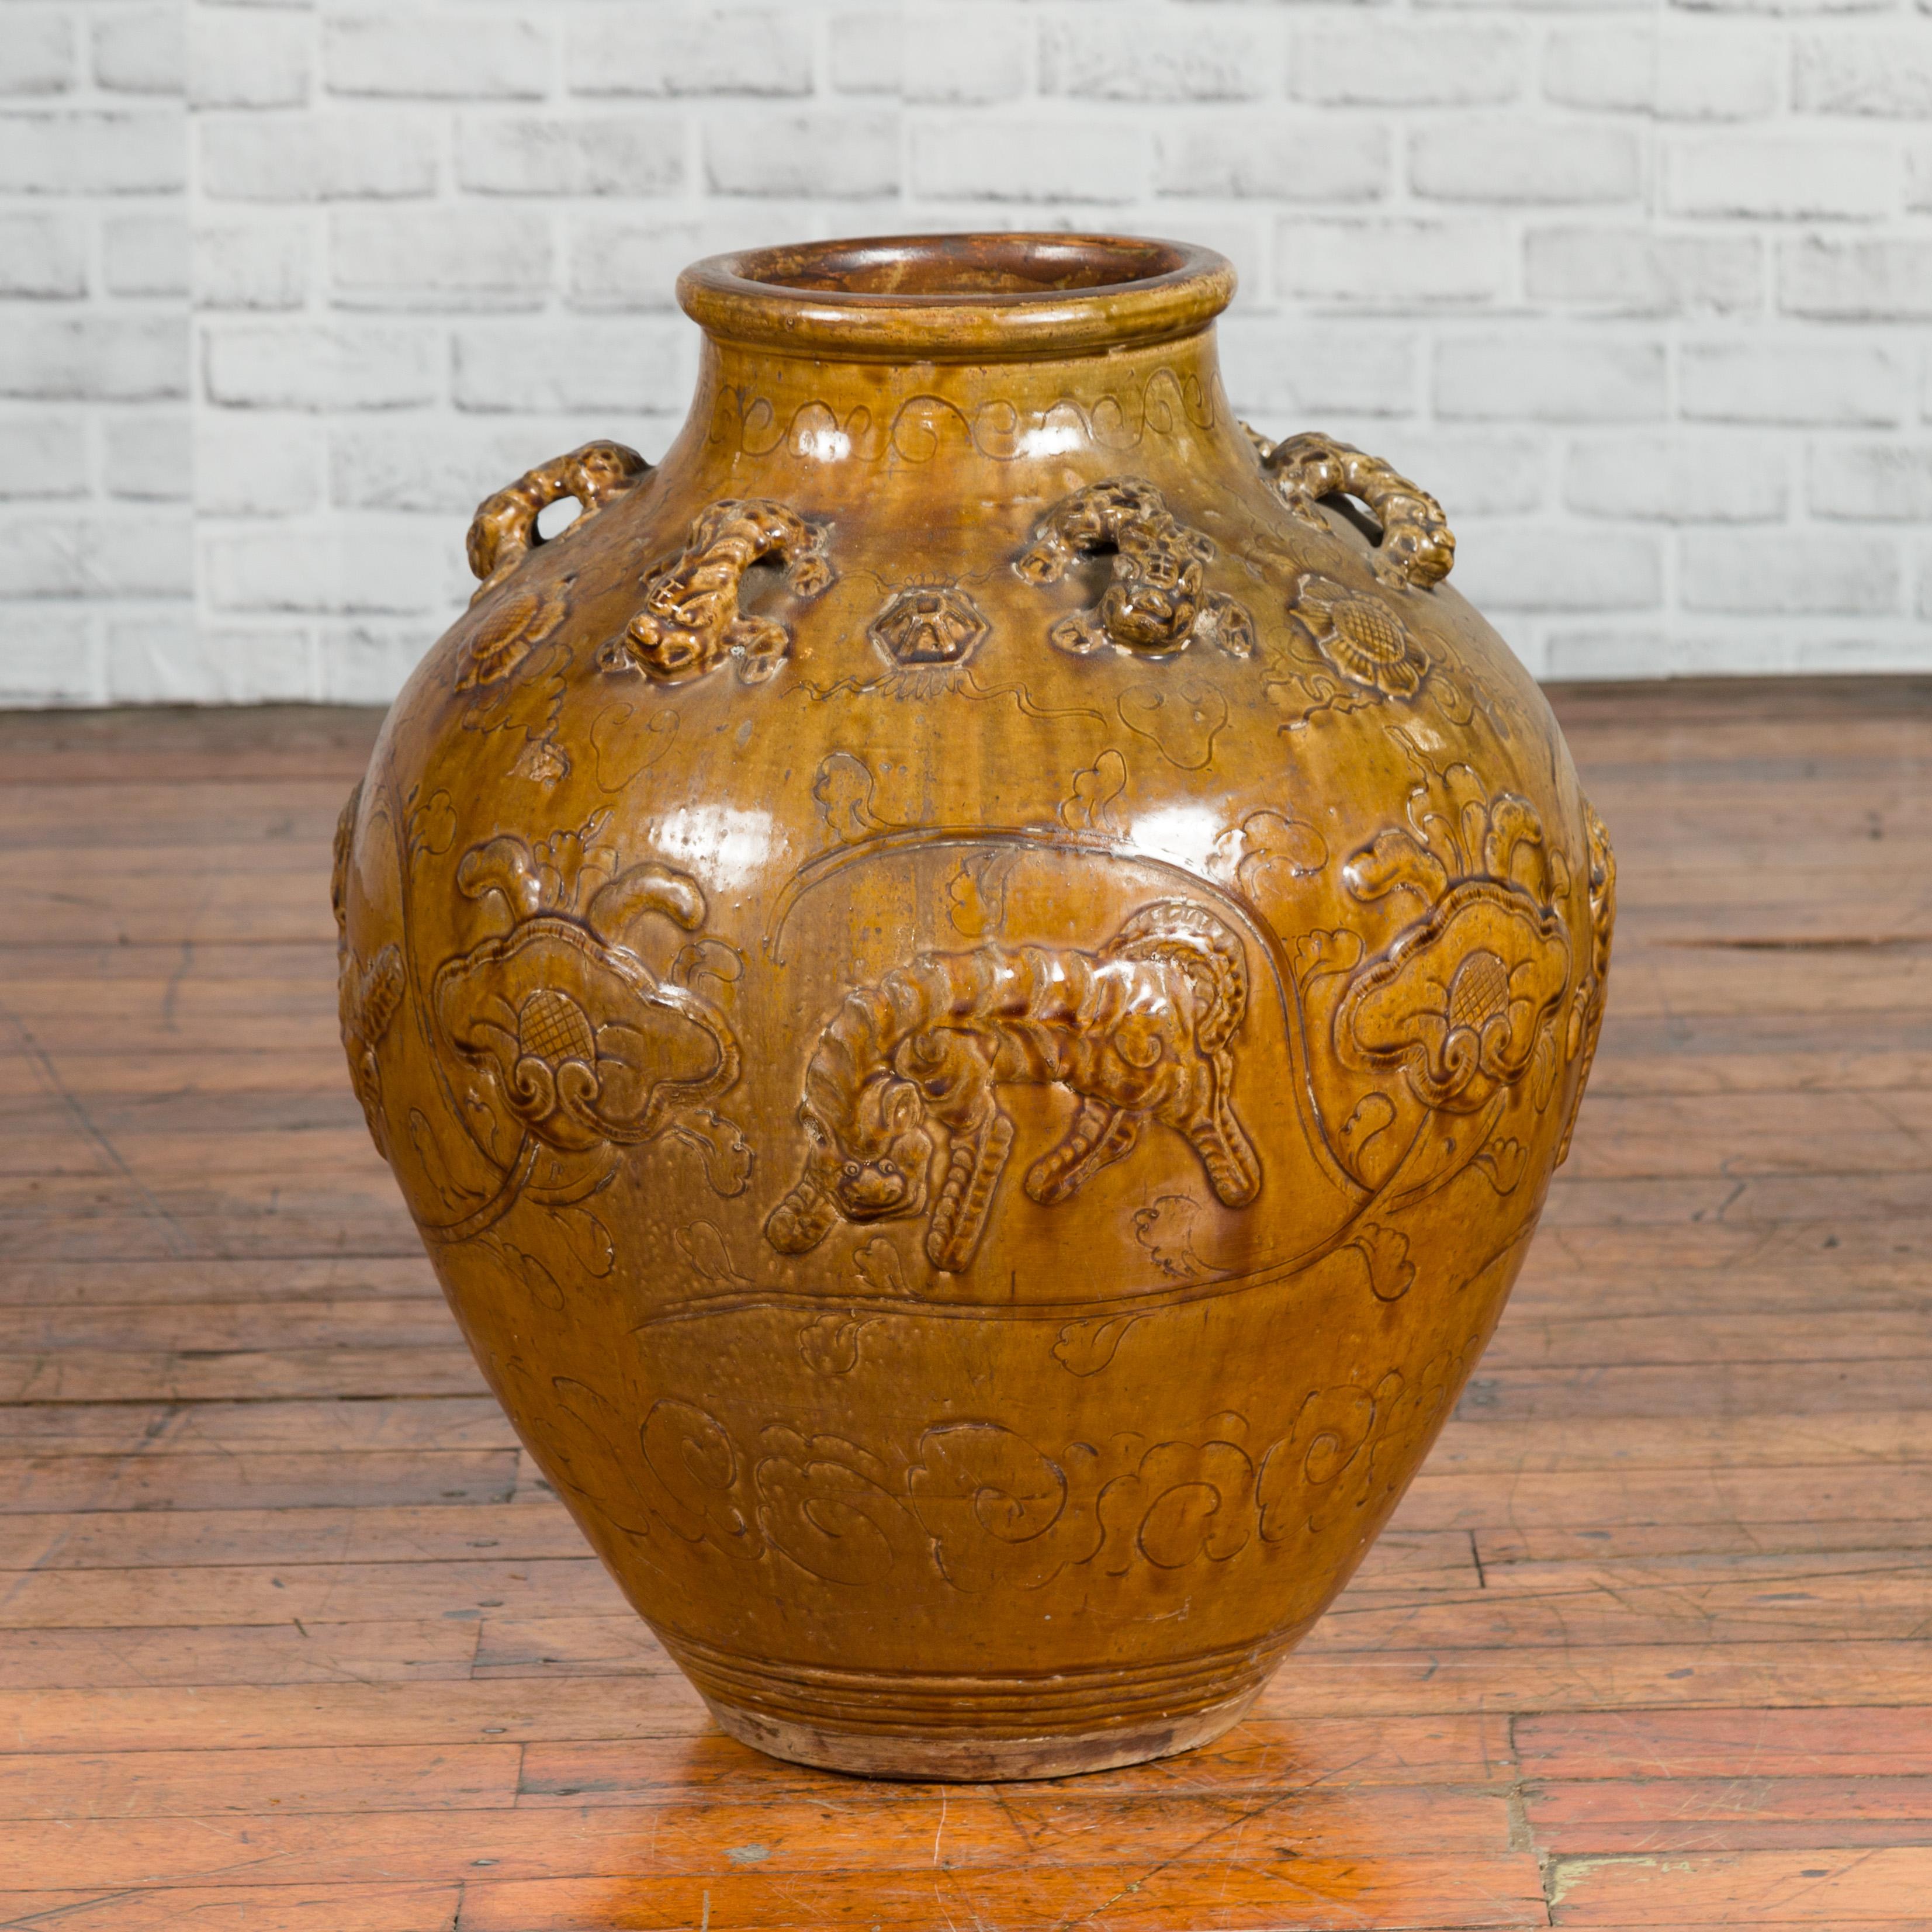 Pot à eau Martaban en céramique vernie de la période de la dynastie Ming, datant du XVIIe siècle, avec des motifs de tigres et de petites poignées. Créée en Chine à l'époque de la dynastie Ming, cette jarre à eau Martaban présente une patine brun